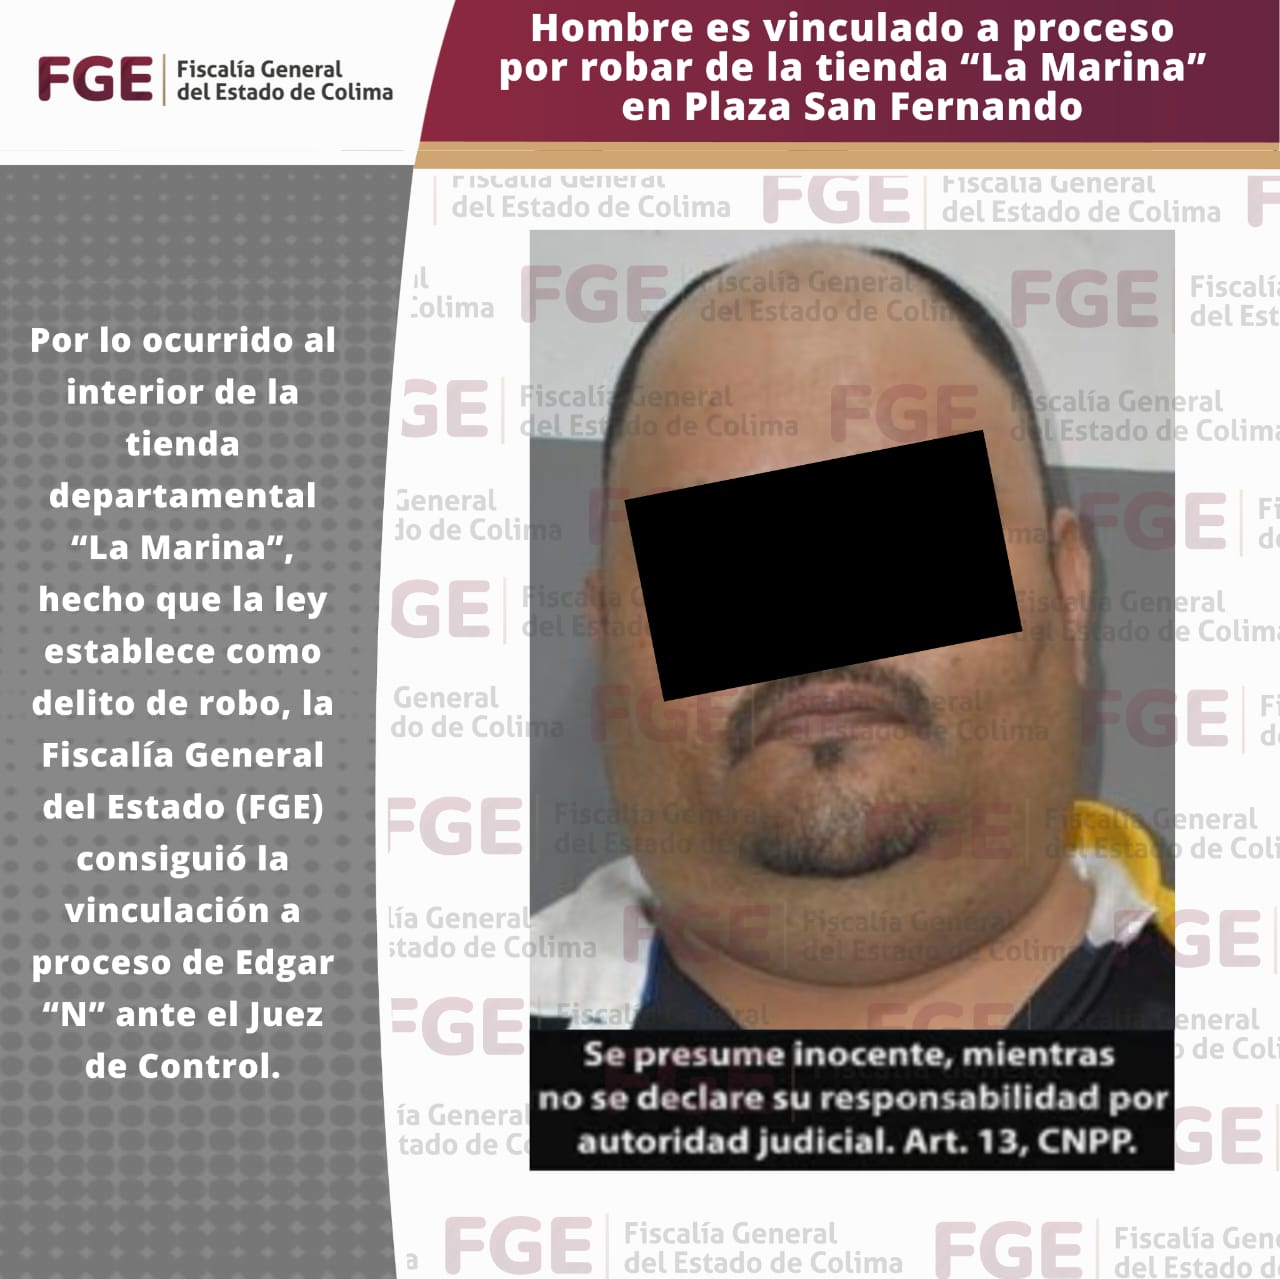 Hombre es vinculado a procesoPor robar de la tienda “La Marina” en Plaza San Fernando